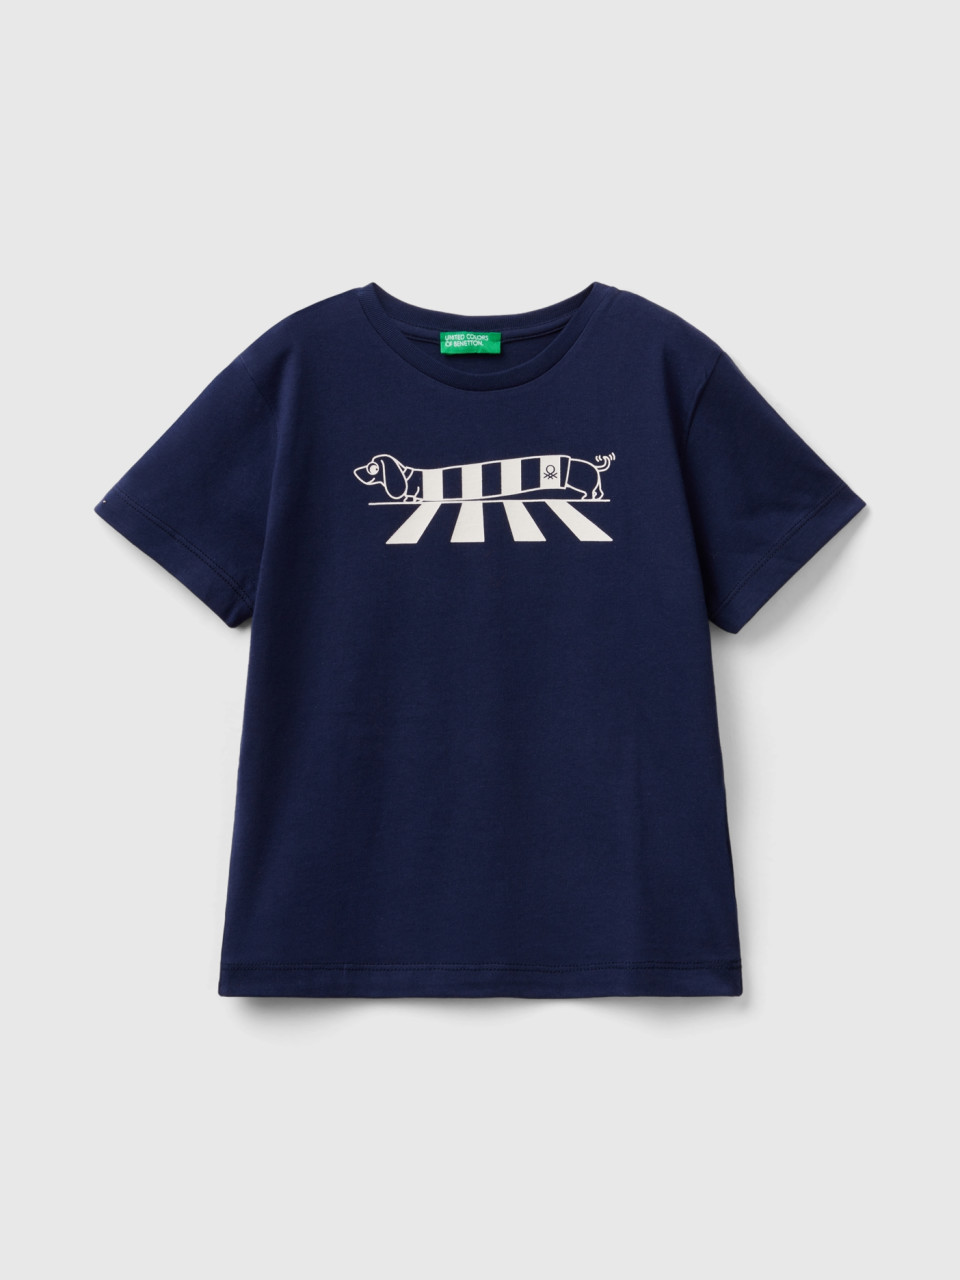 Benetton, Camiseta De Algodón Orgánico Con Estampado, Azul Oscuro, Niños